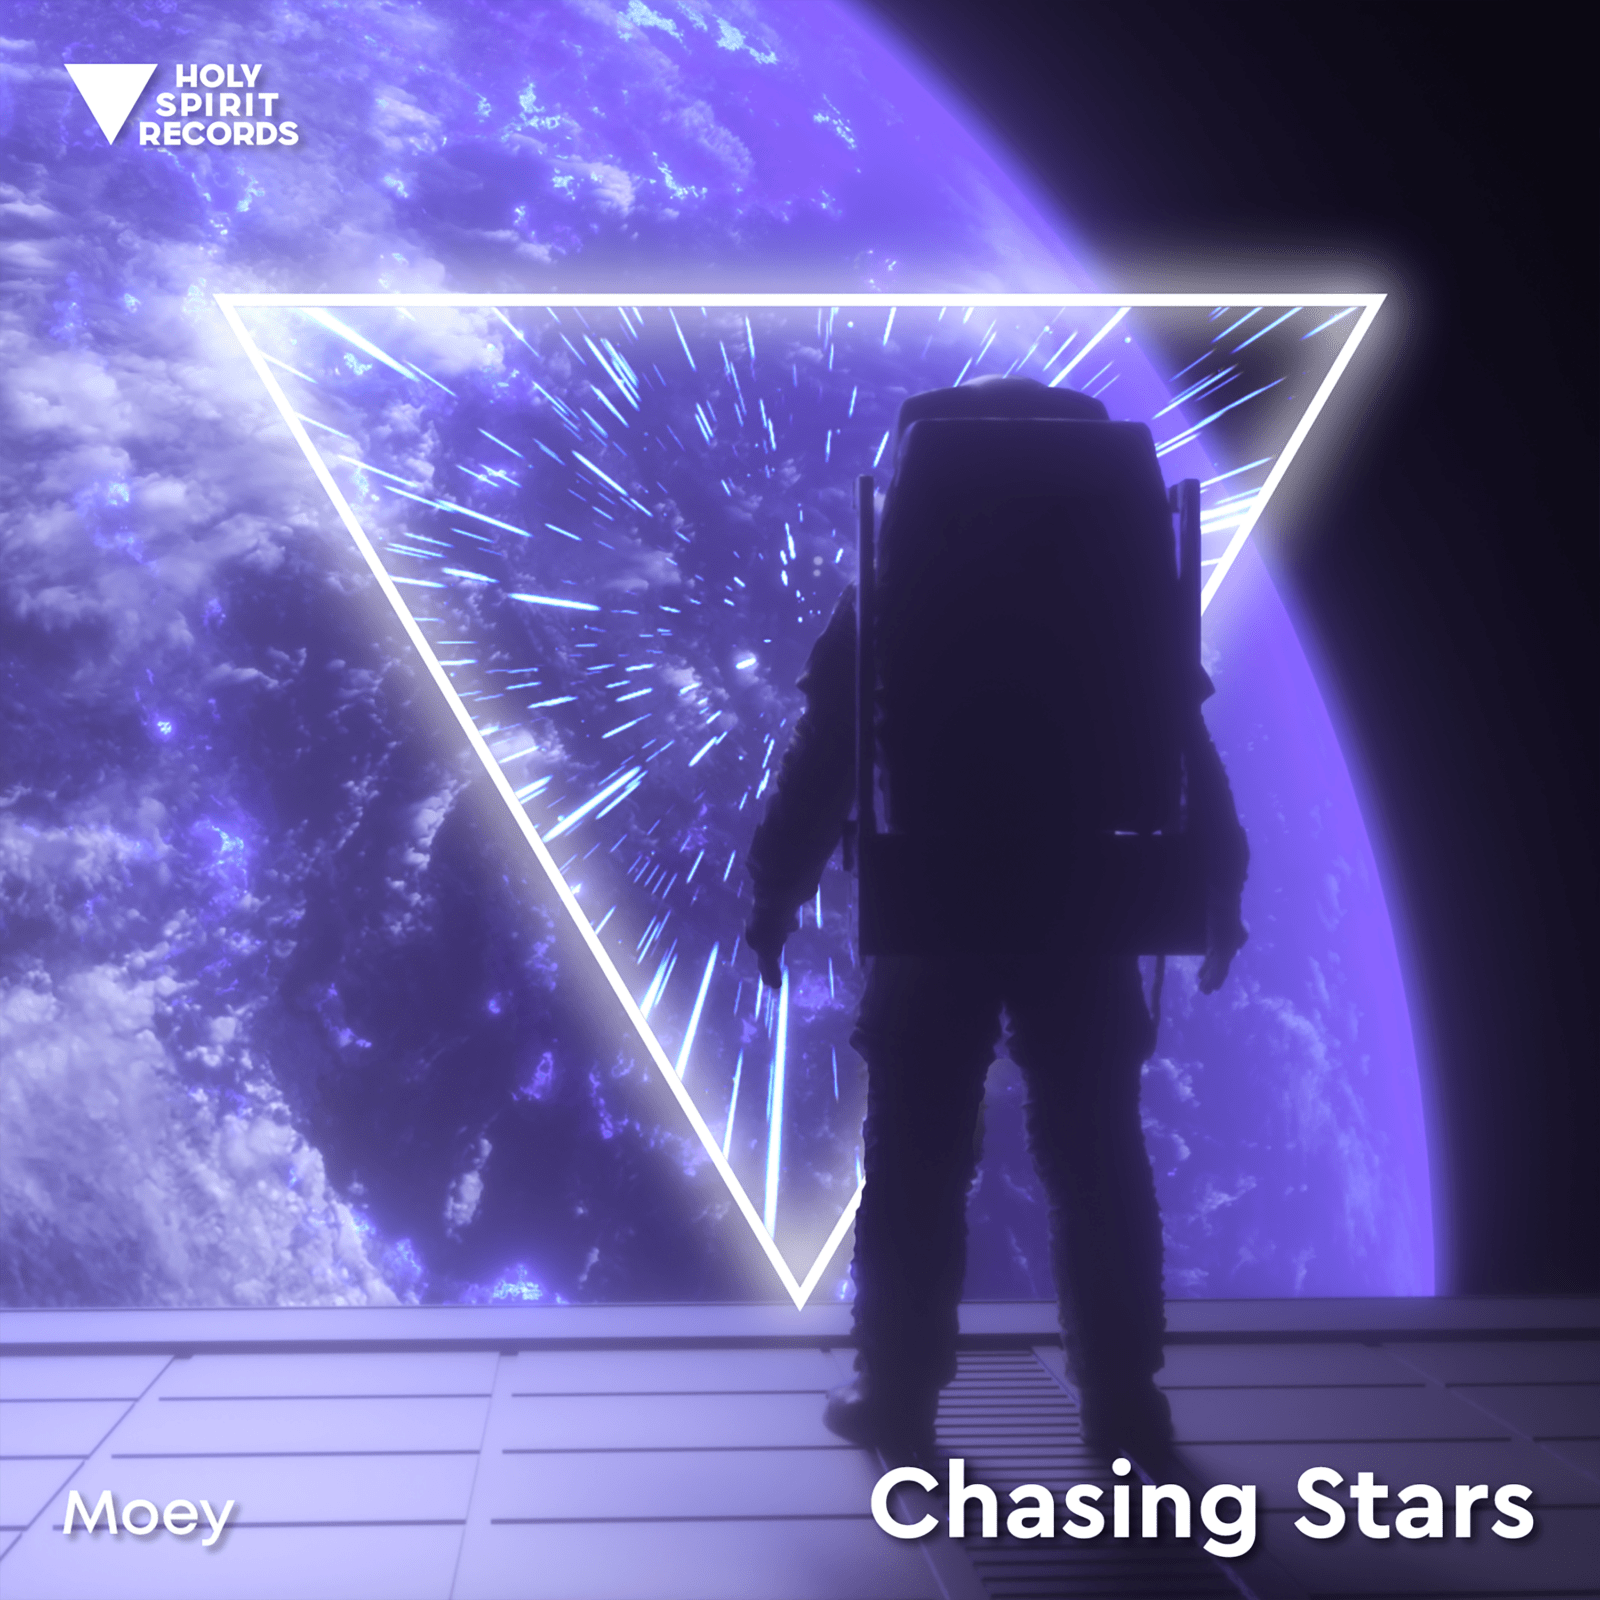 Chasing stars